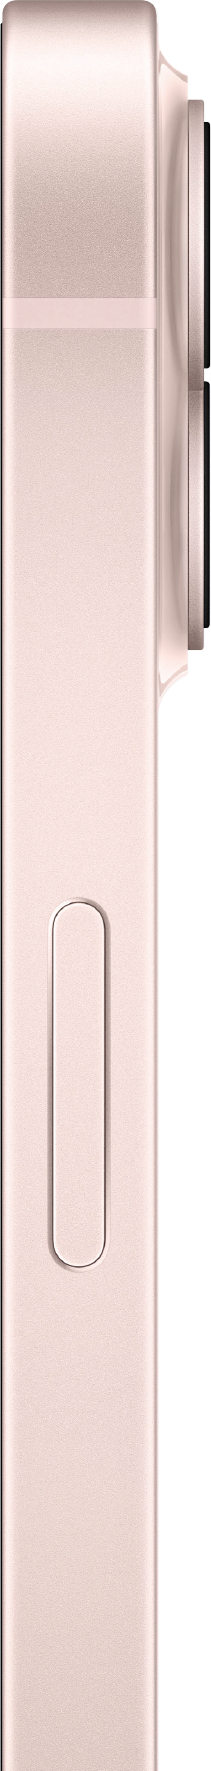 אייפון 13 בצבע ורוד | iPhone 13 - Pink